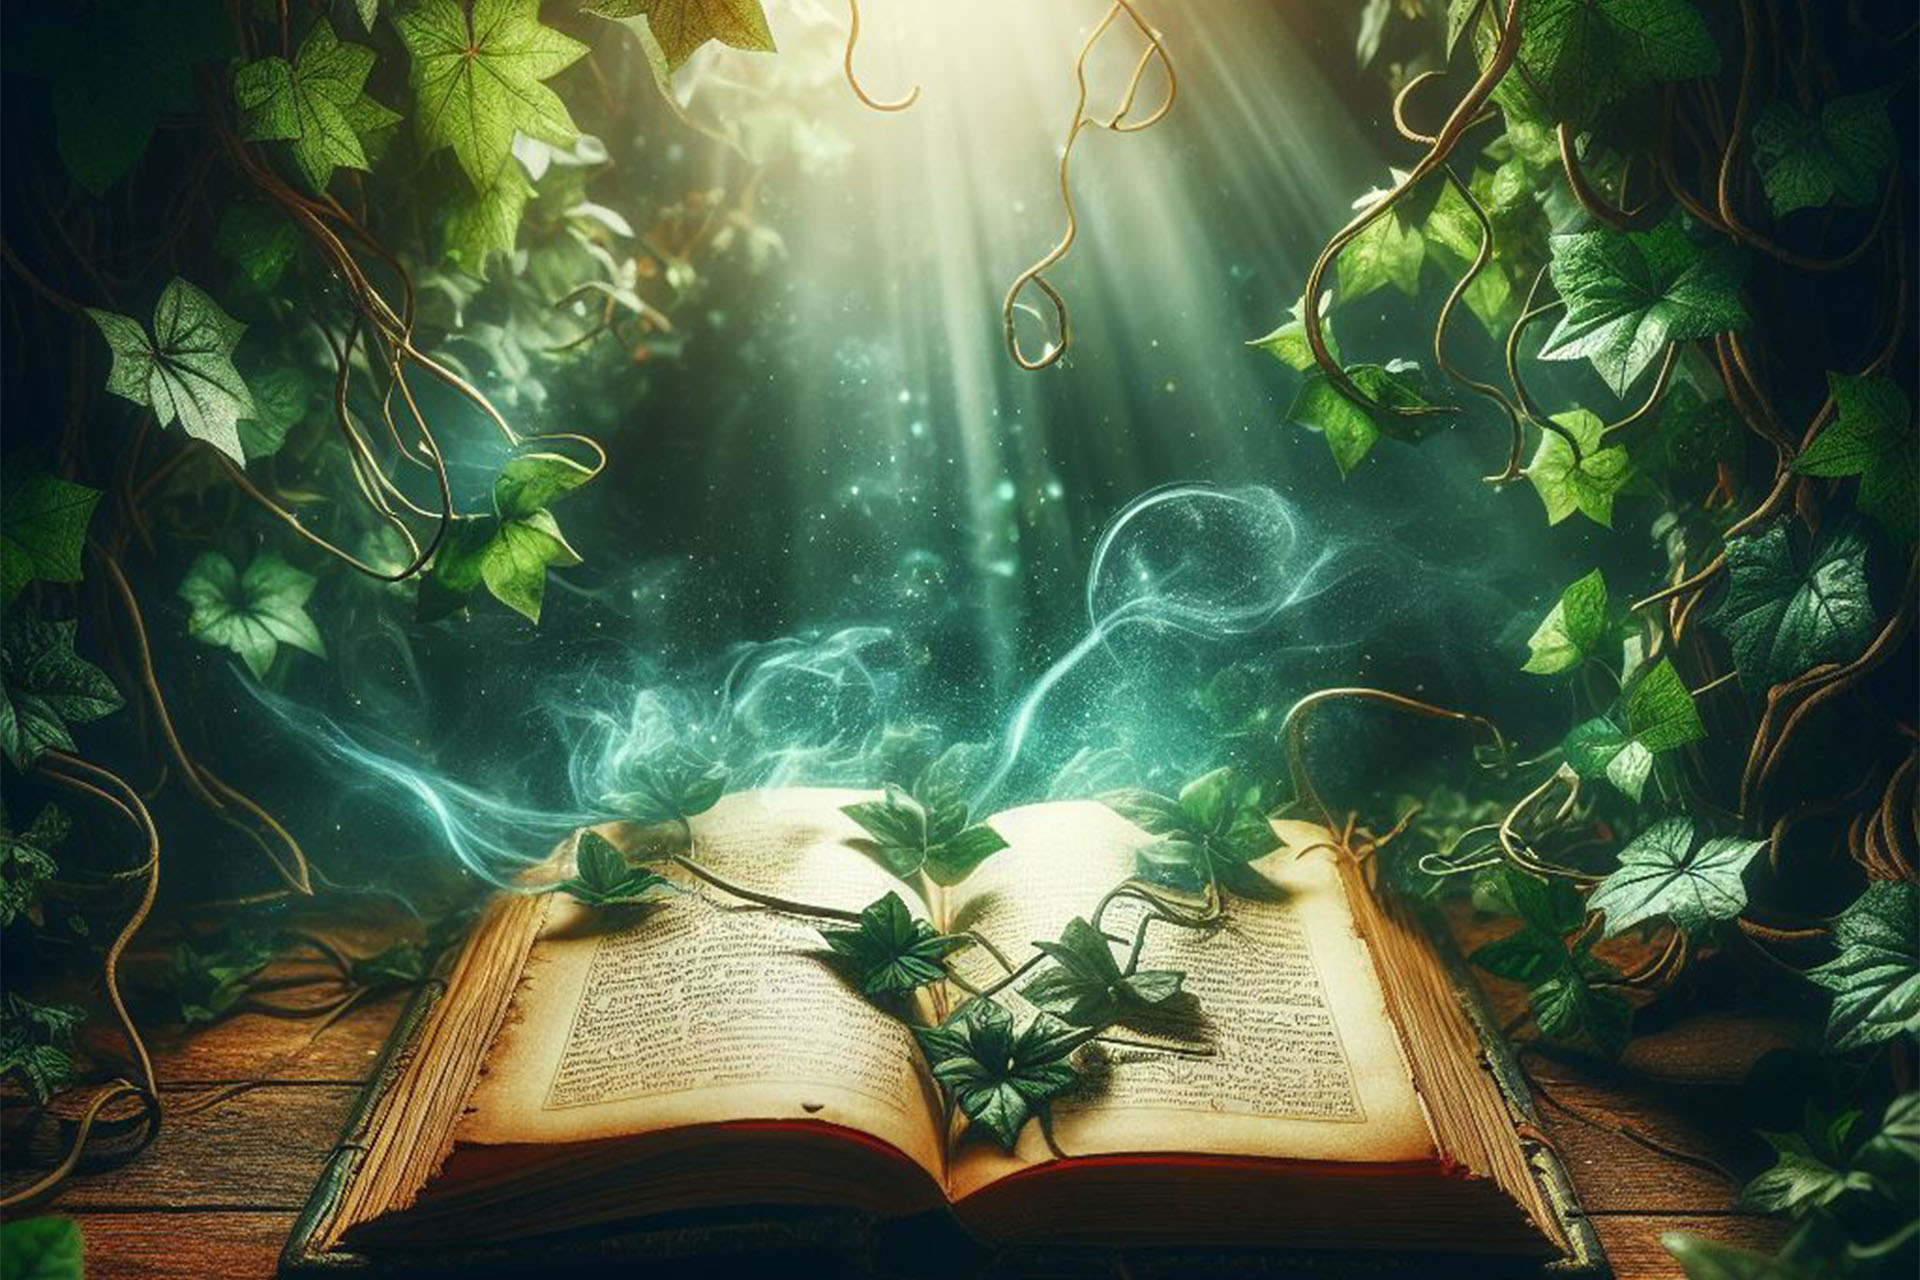 En sagobok omgiven av ett magiskt sken och slingrande växter.